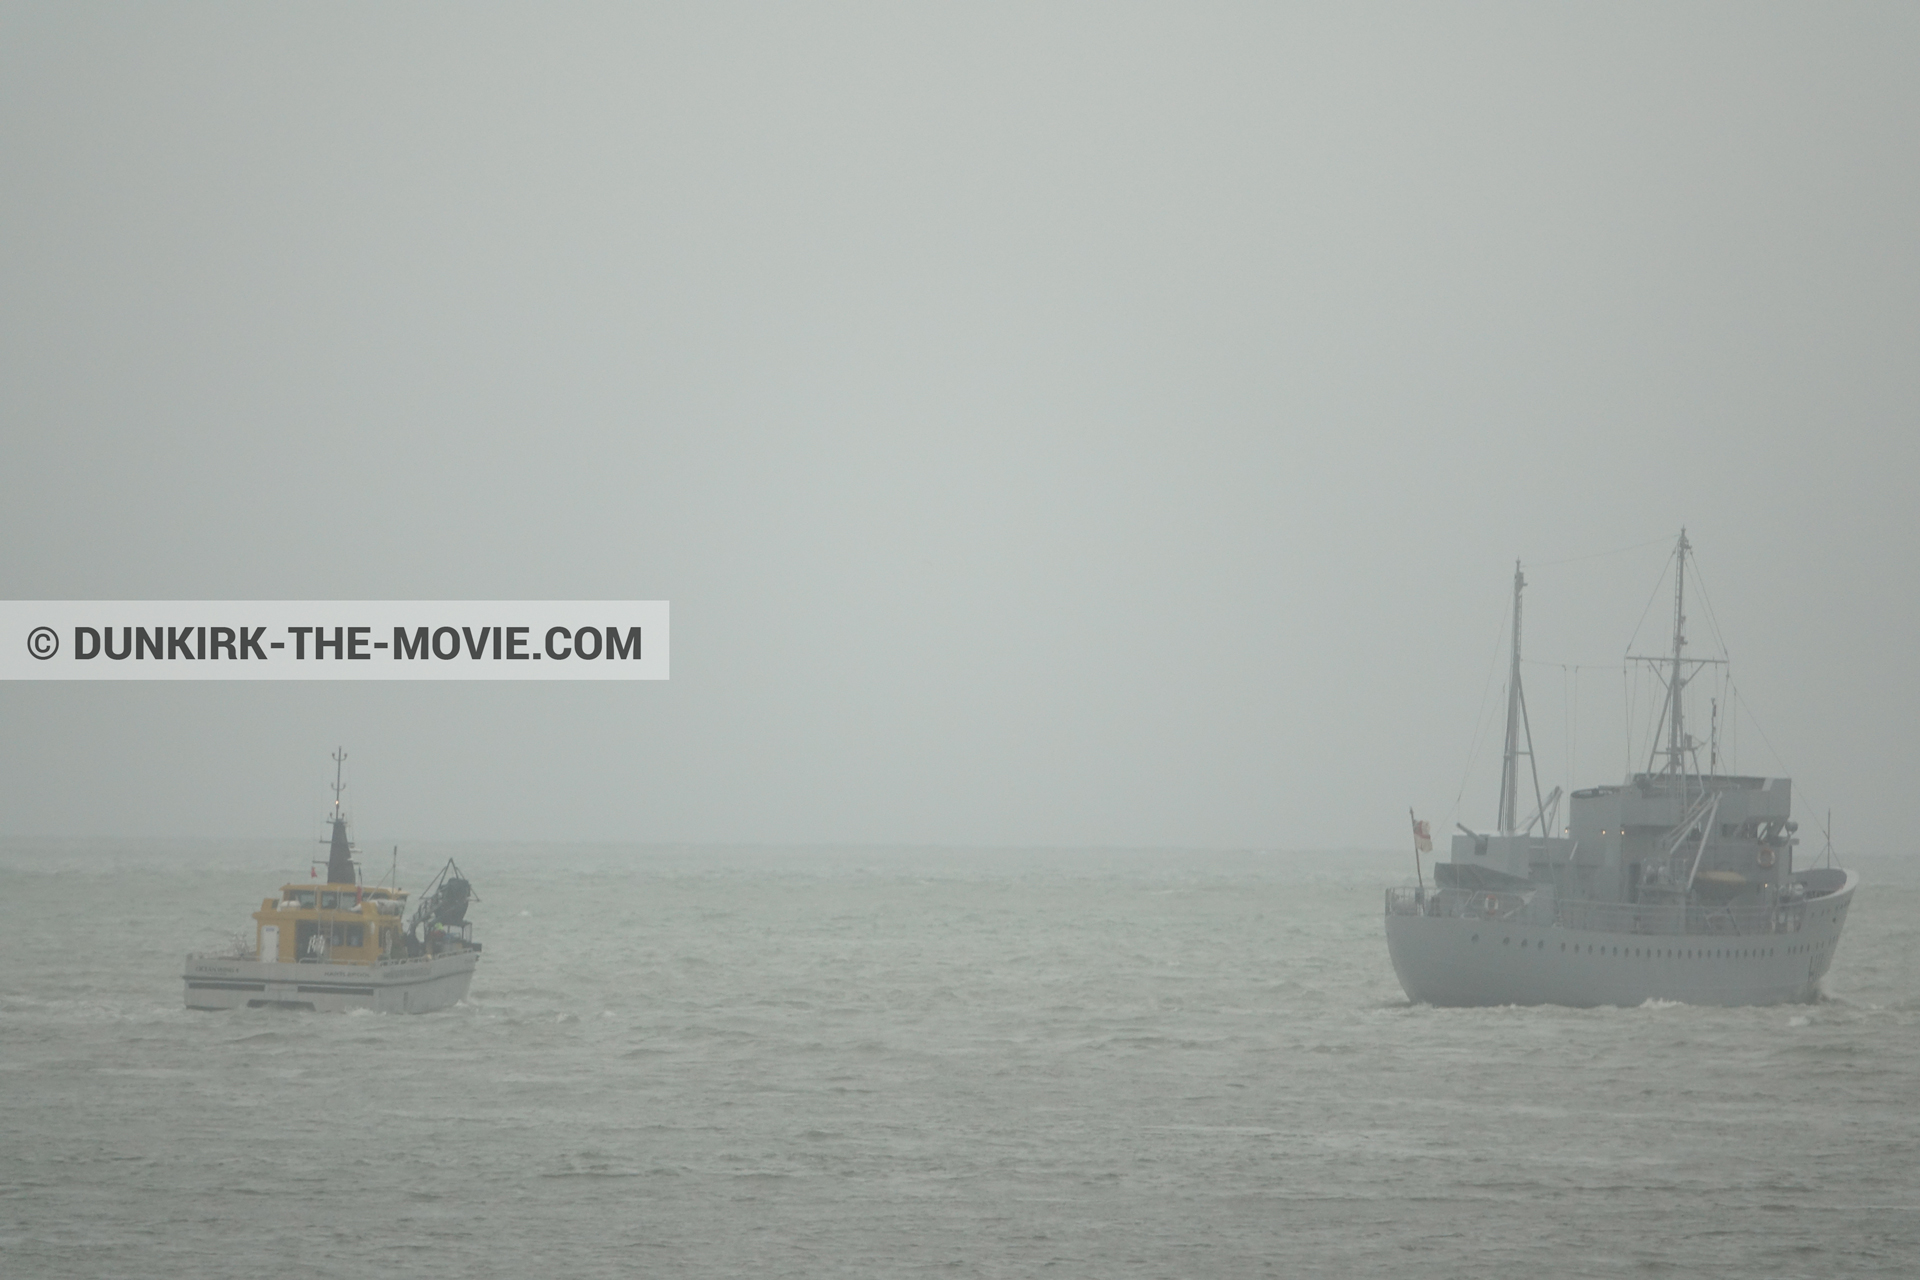 Fotos con barco, cielo gris, H11 - MLV Castor, mares calma, Ocean Wind 4,  durante el rodaje de la película Dunkerque de Nolan